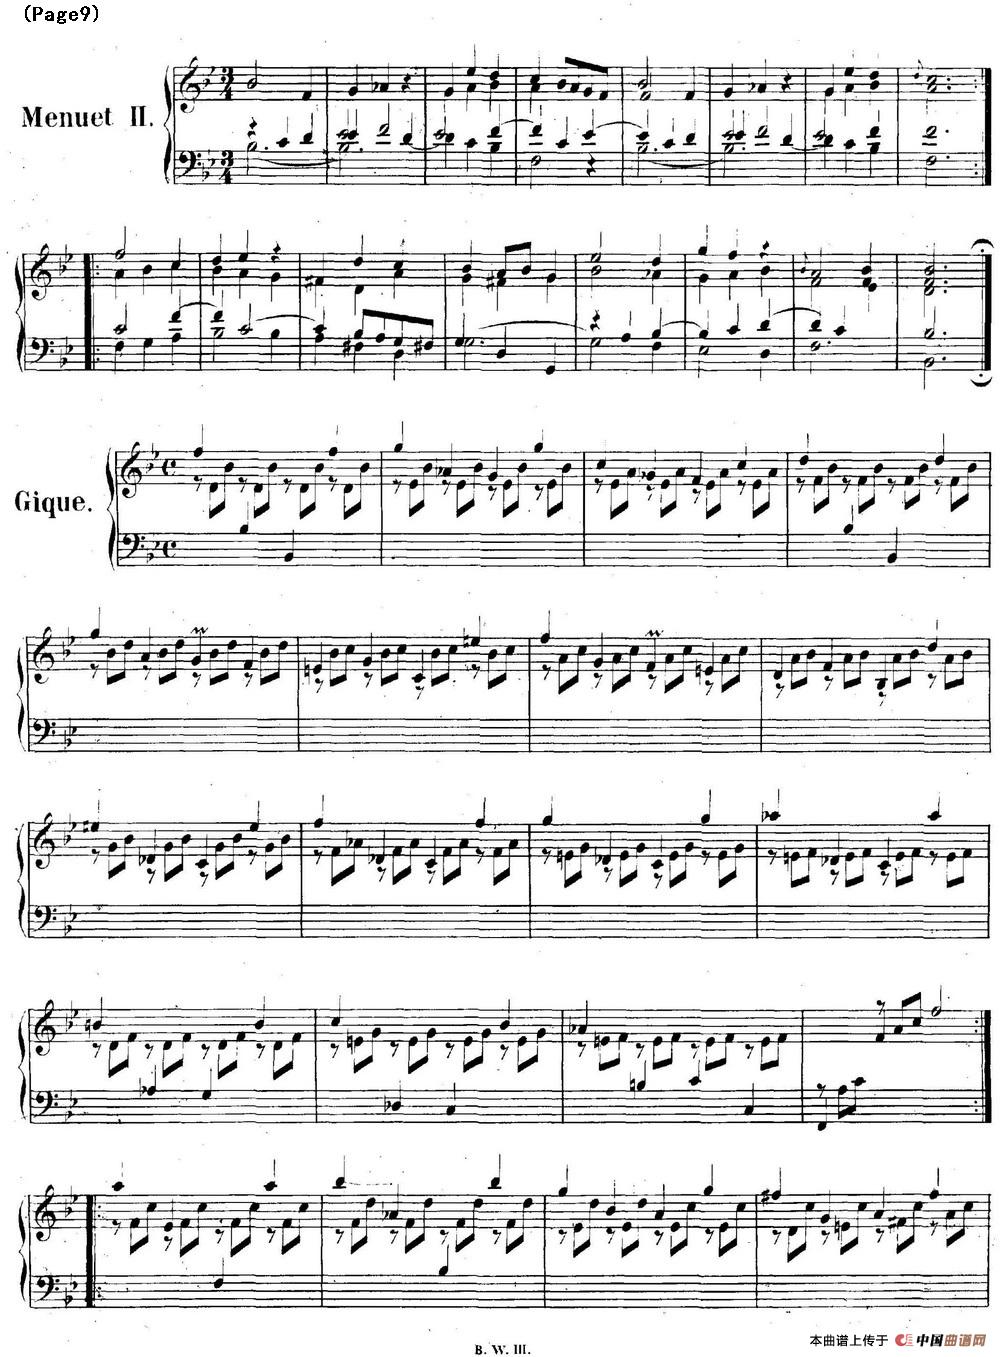 帕蒂塔6首德国组曲（No.1 降B大调 巴赫 Partita B-flat Major BWV825）(1)_BWV0825_页面_09.jpg